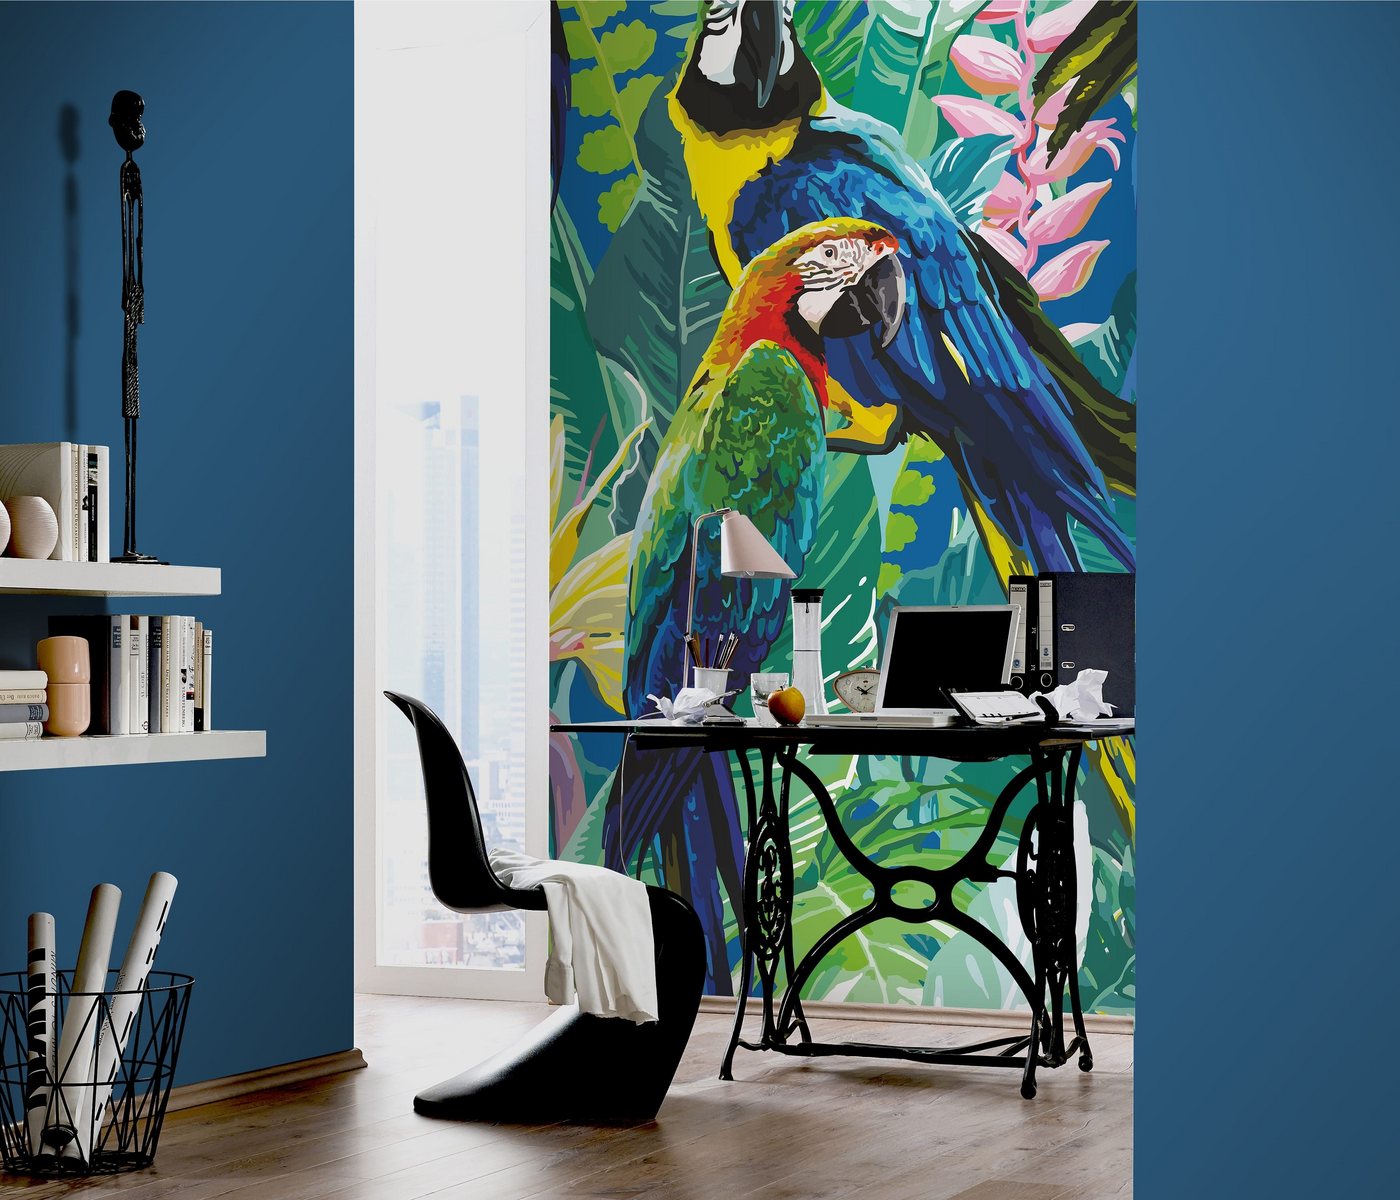 Newroom Vliestapete, [ 1,5 x 2,7 m ] großzügiges Motiv - kein wiederkehrendes Muster - Fototapete Wandbild Papagei Palmen Blätter Made in Germany von Newroom